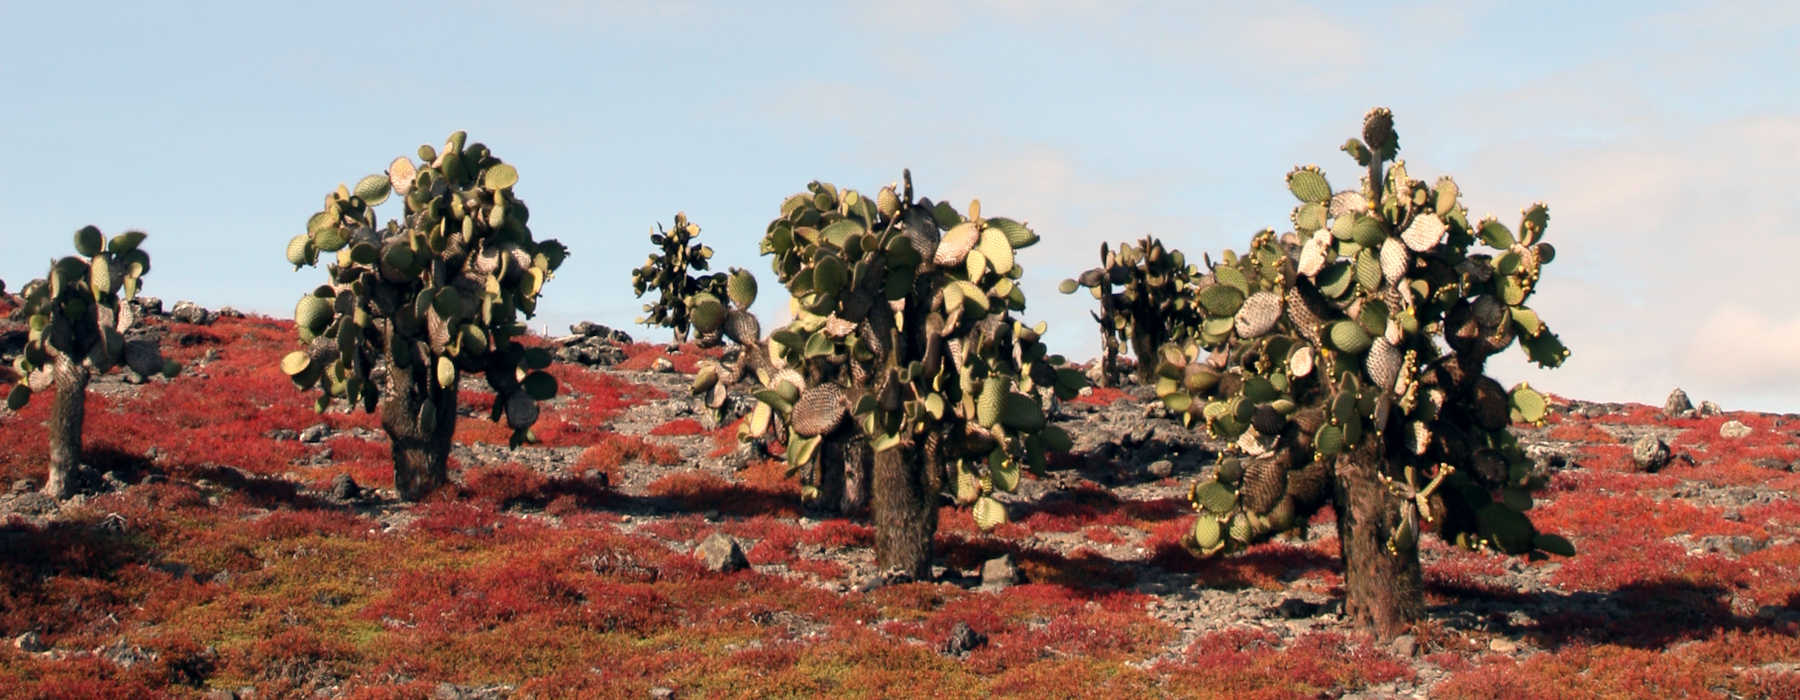 Galapagos Archipelago<br class="hidden-md hidden-lg" /> Holidays